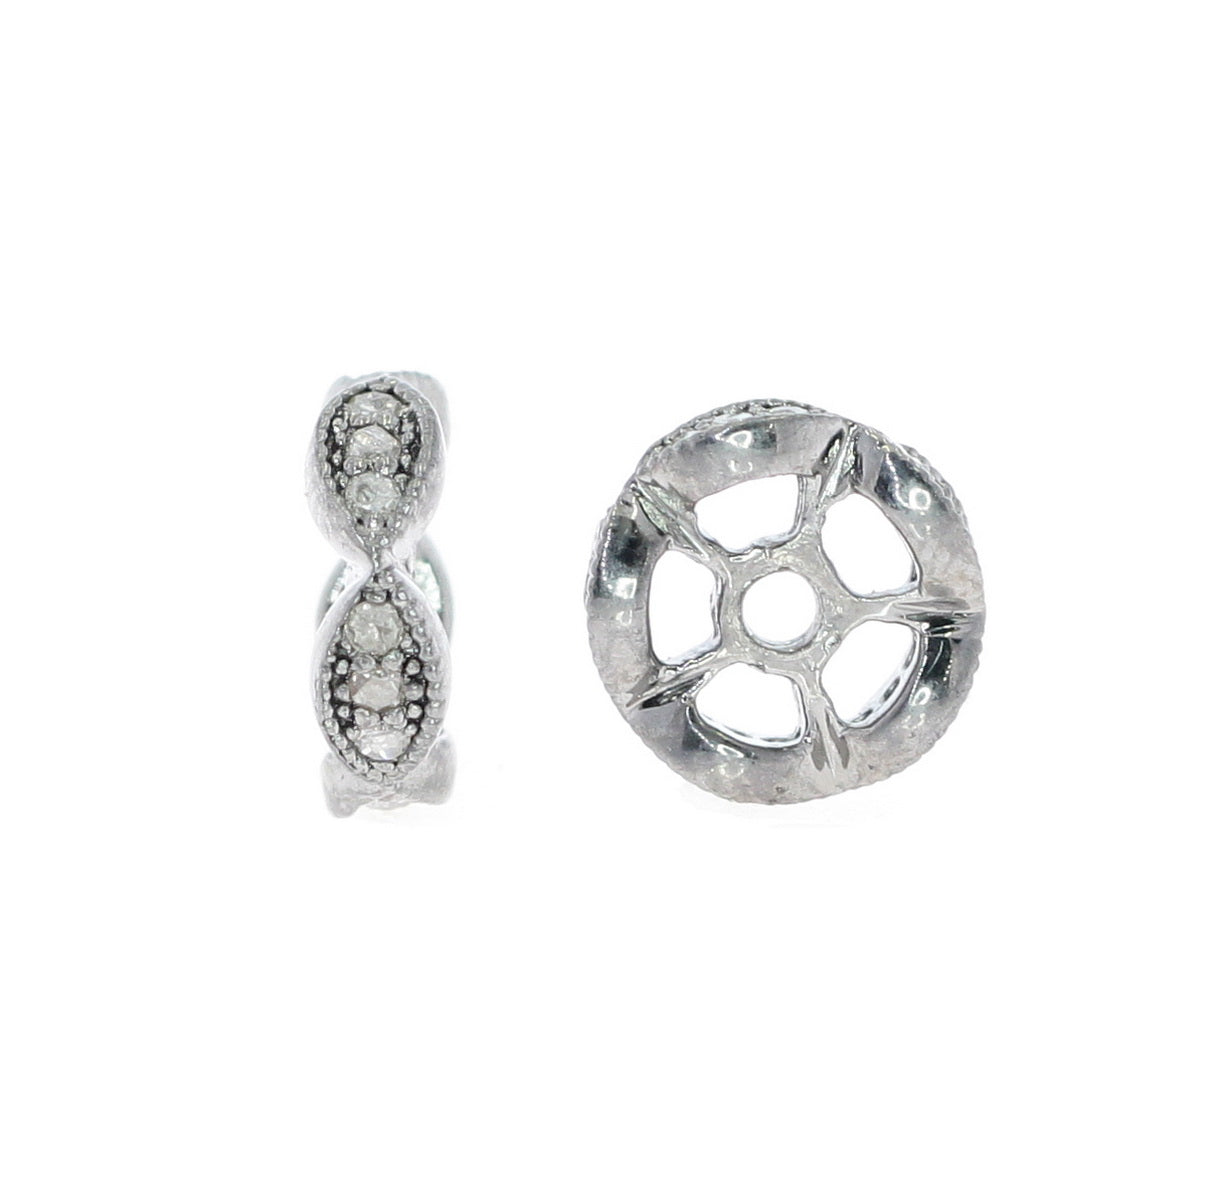 Pave Diamond Spacer Beads